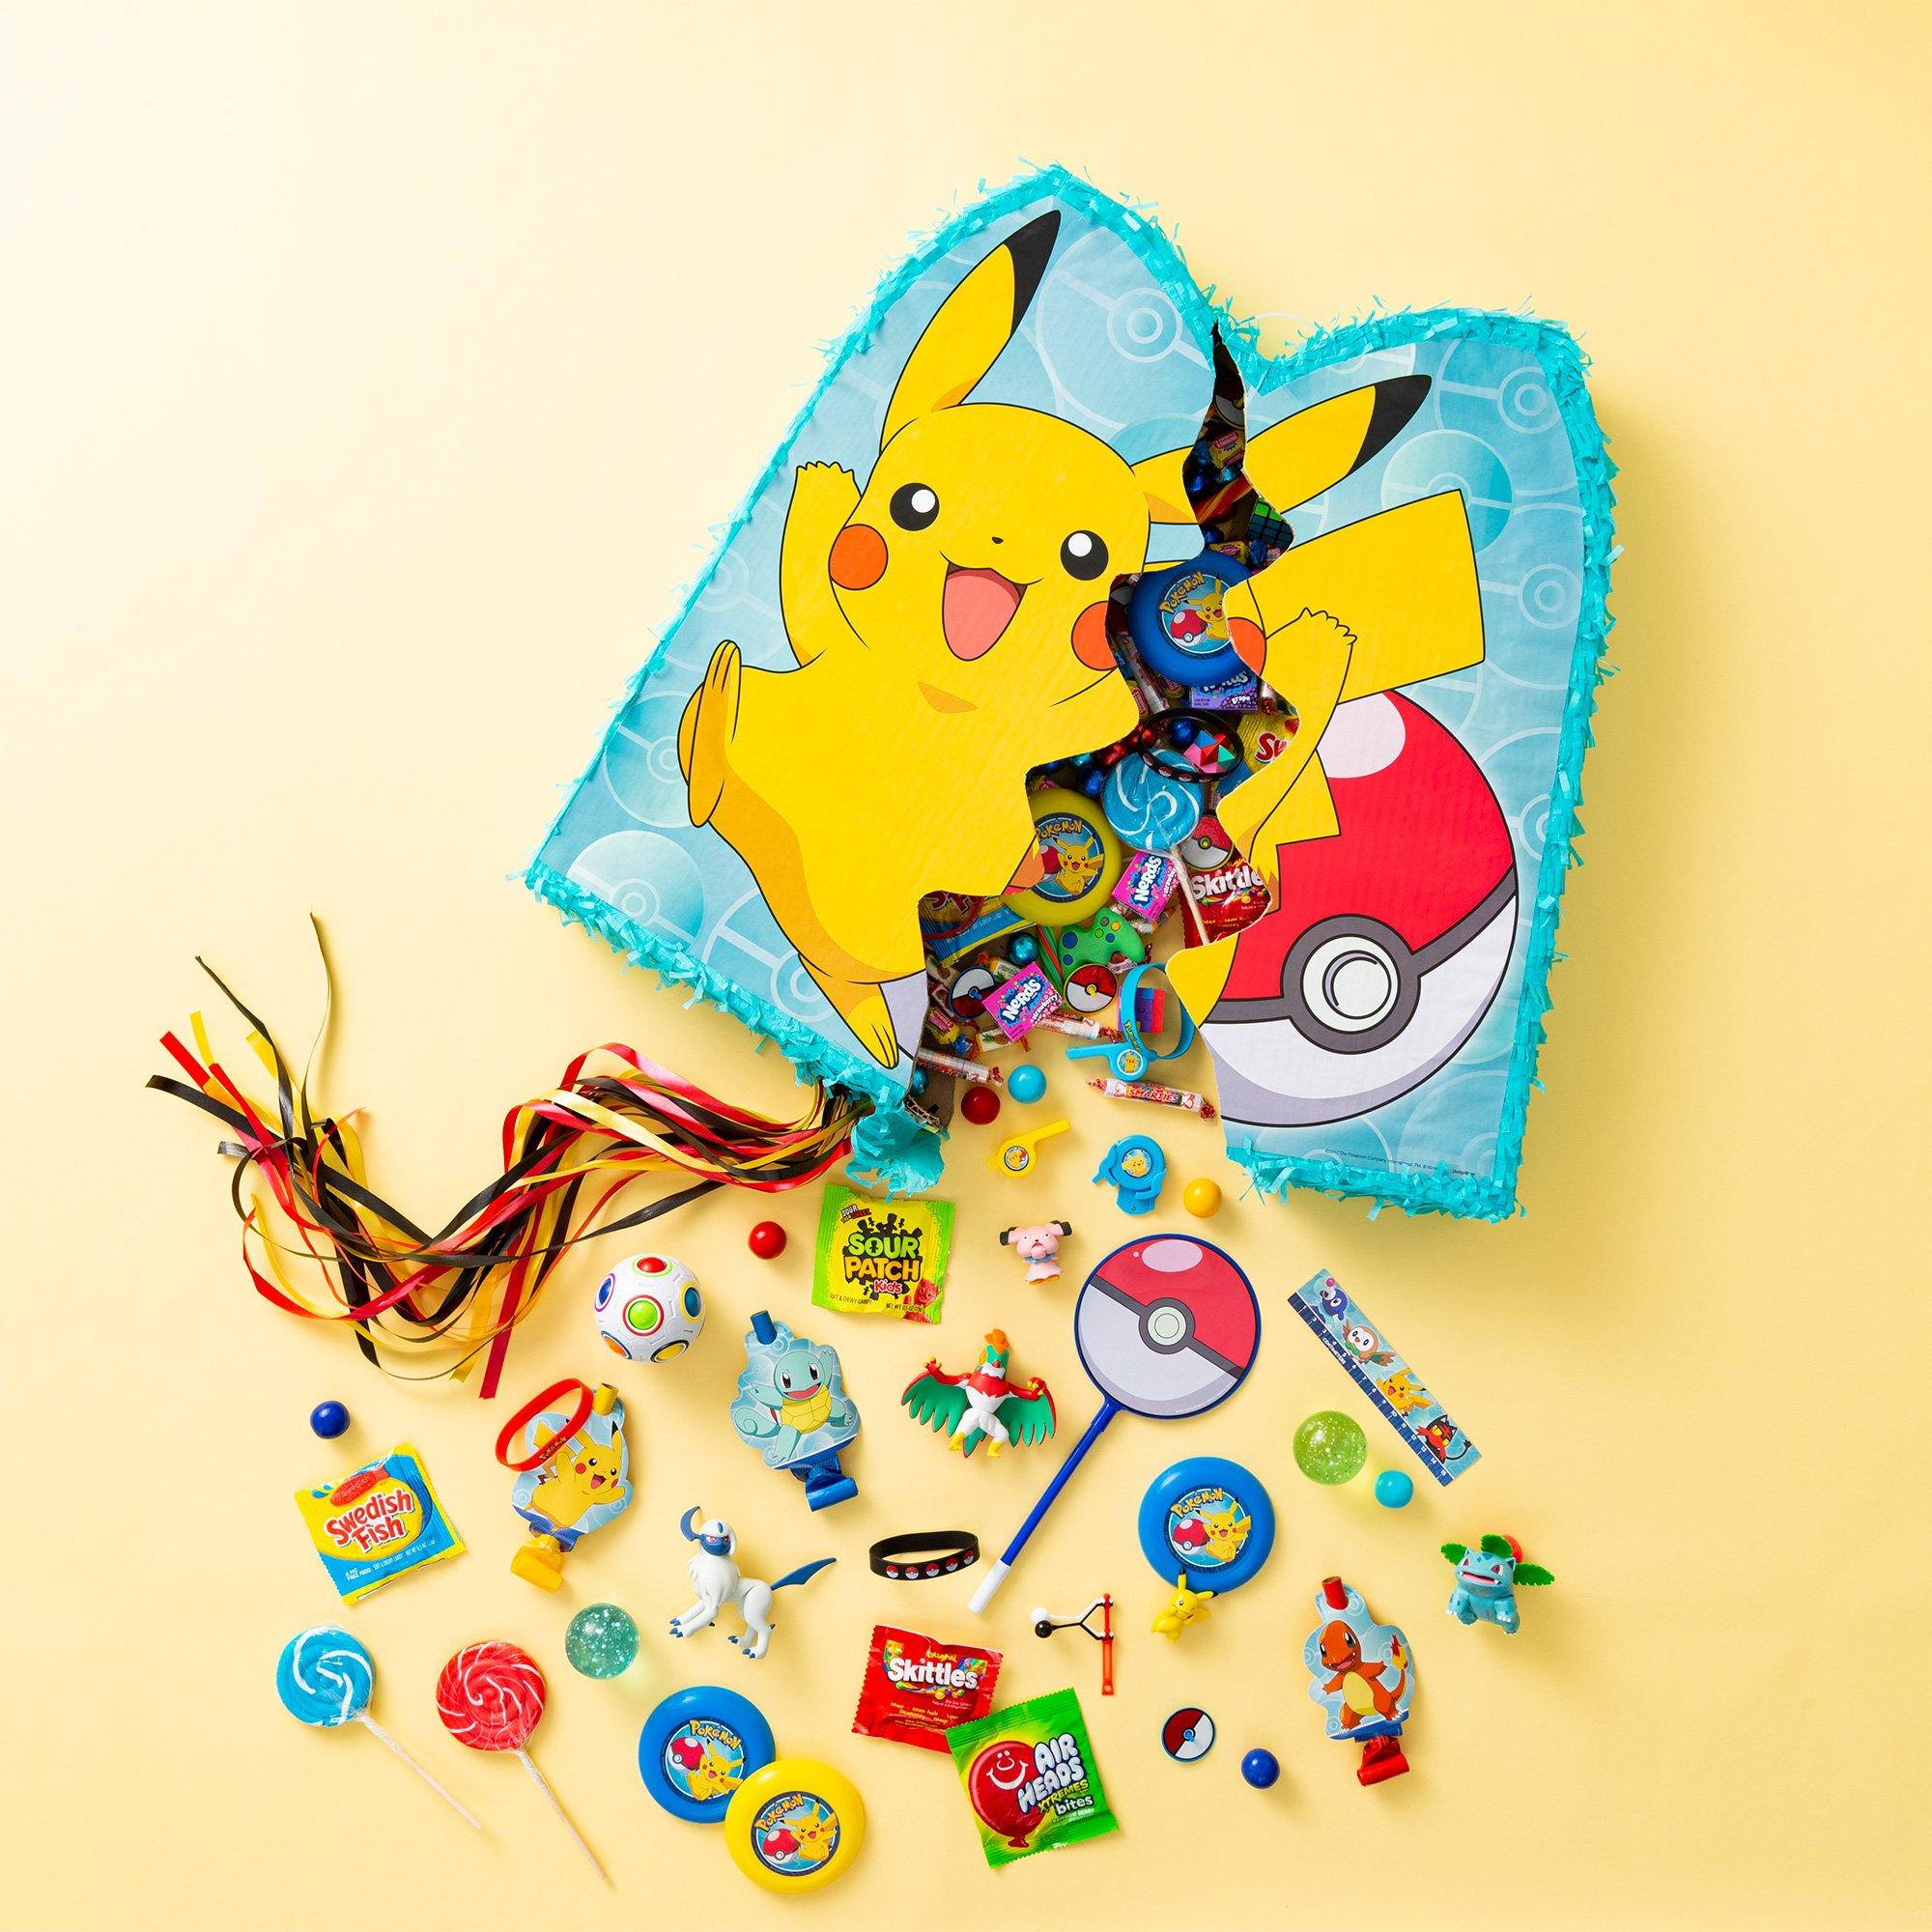 Ya Otta Pinata Pokemon Pokeball Pull String Pinata 10 3/4” : Toys & Games 